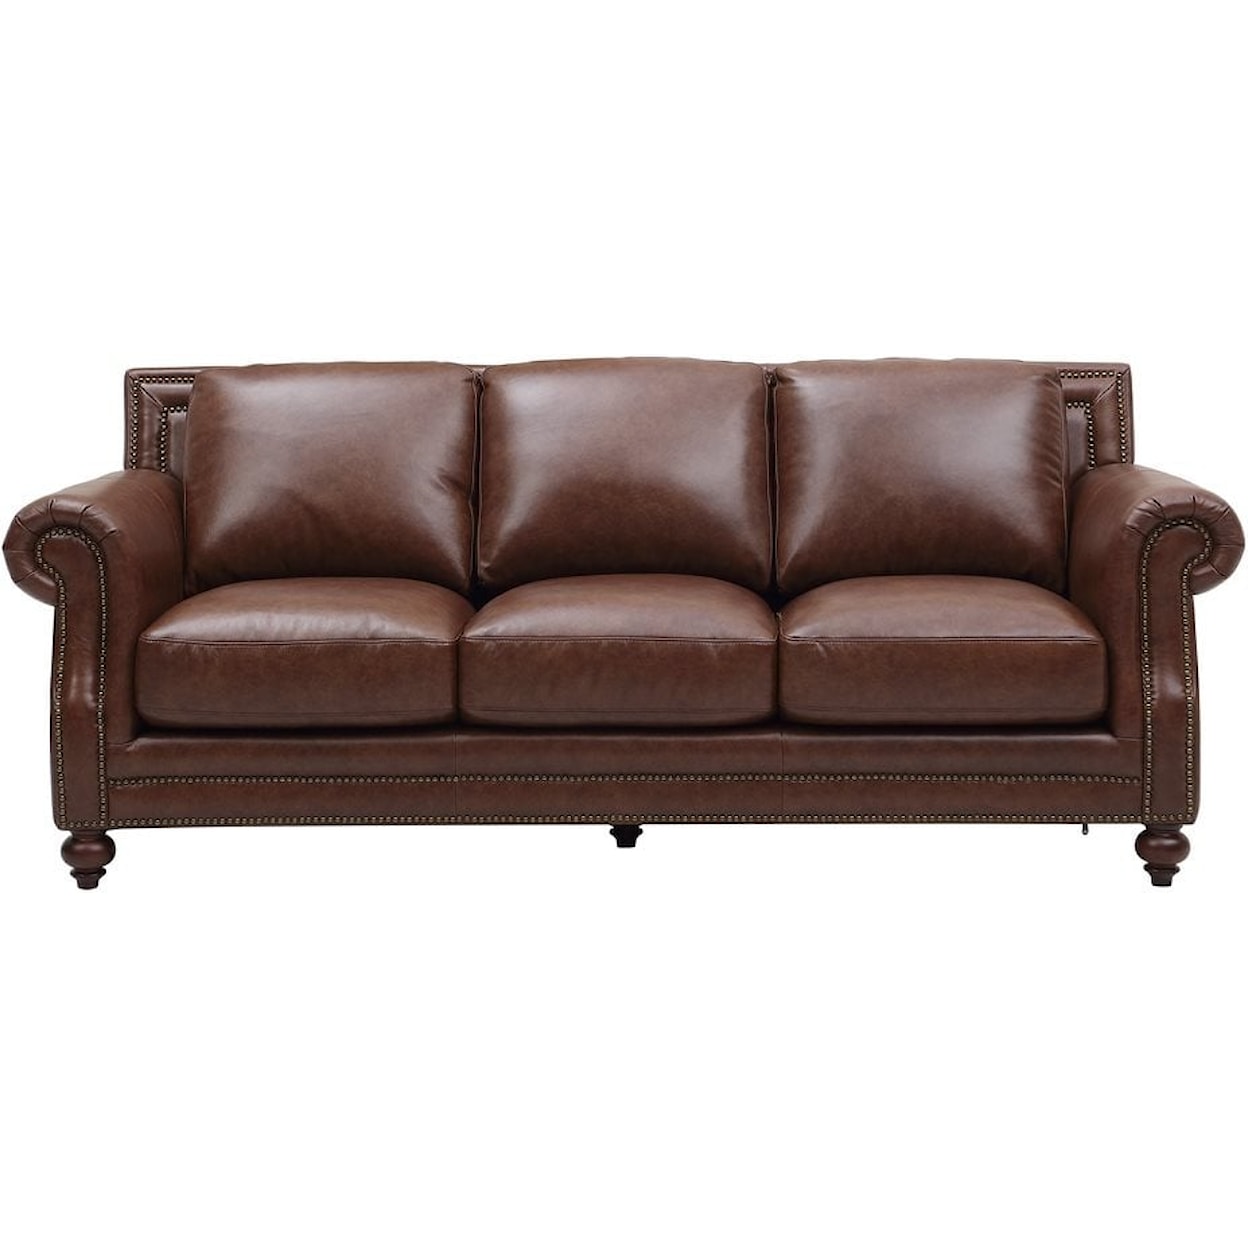 Leather Italia USA Bayliss Leather Sofa